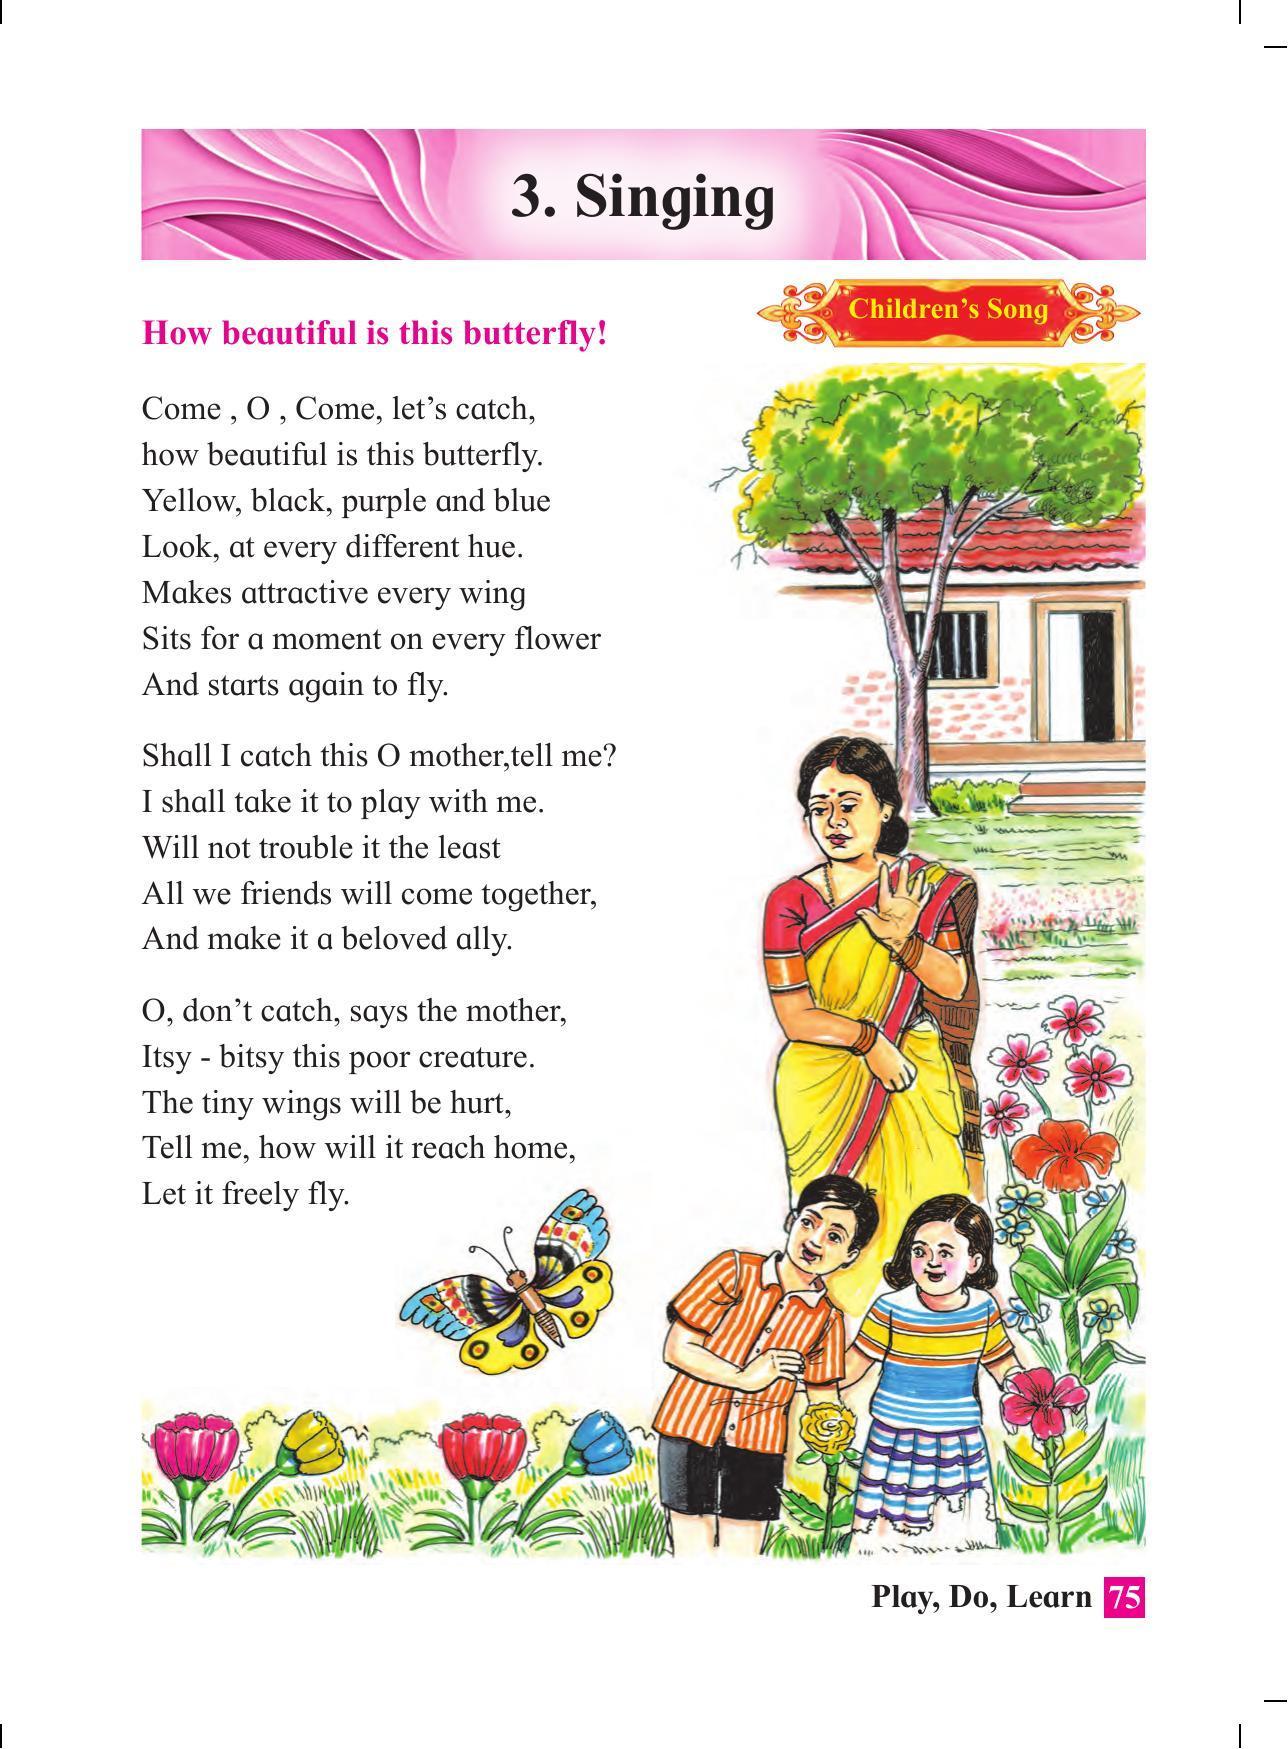 Maharashtra Board Class 4 Play Do Learn (English Medium) Textbook - Page 84